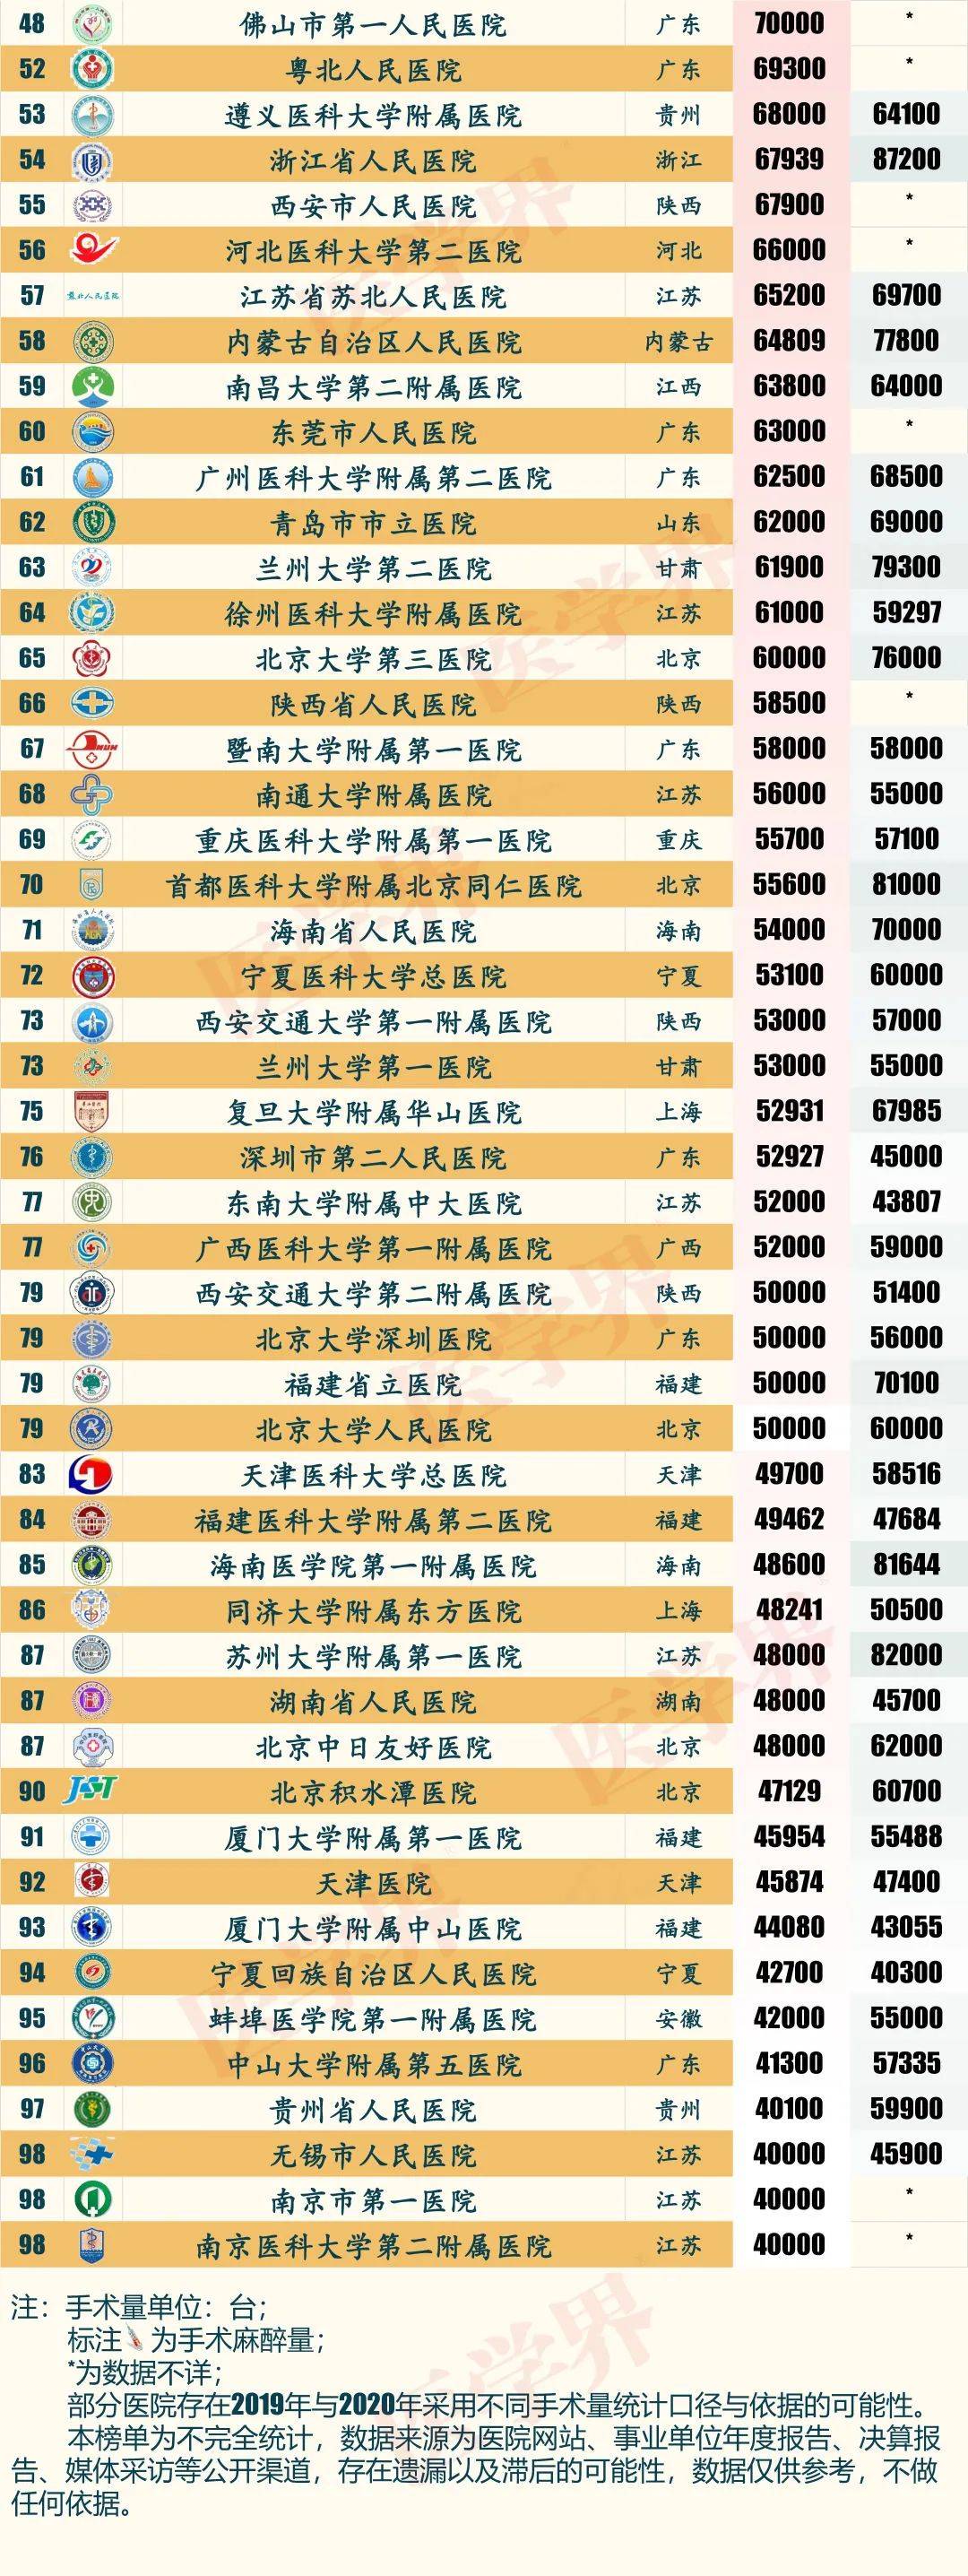 中国百强医院排行榜_最新!2021中国医院百强榜公布(附名单)